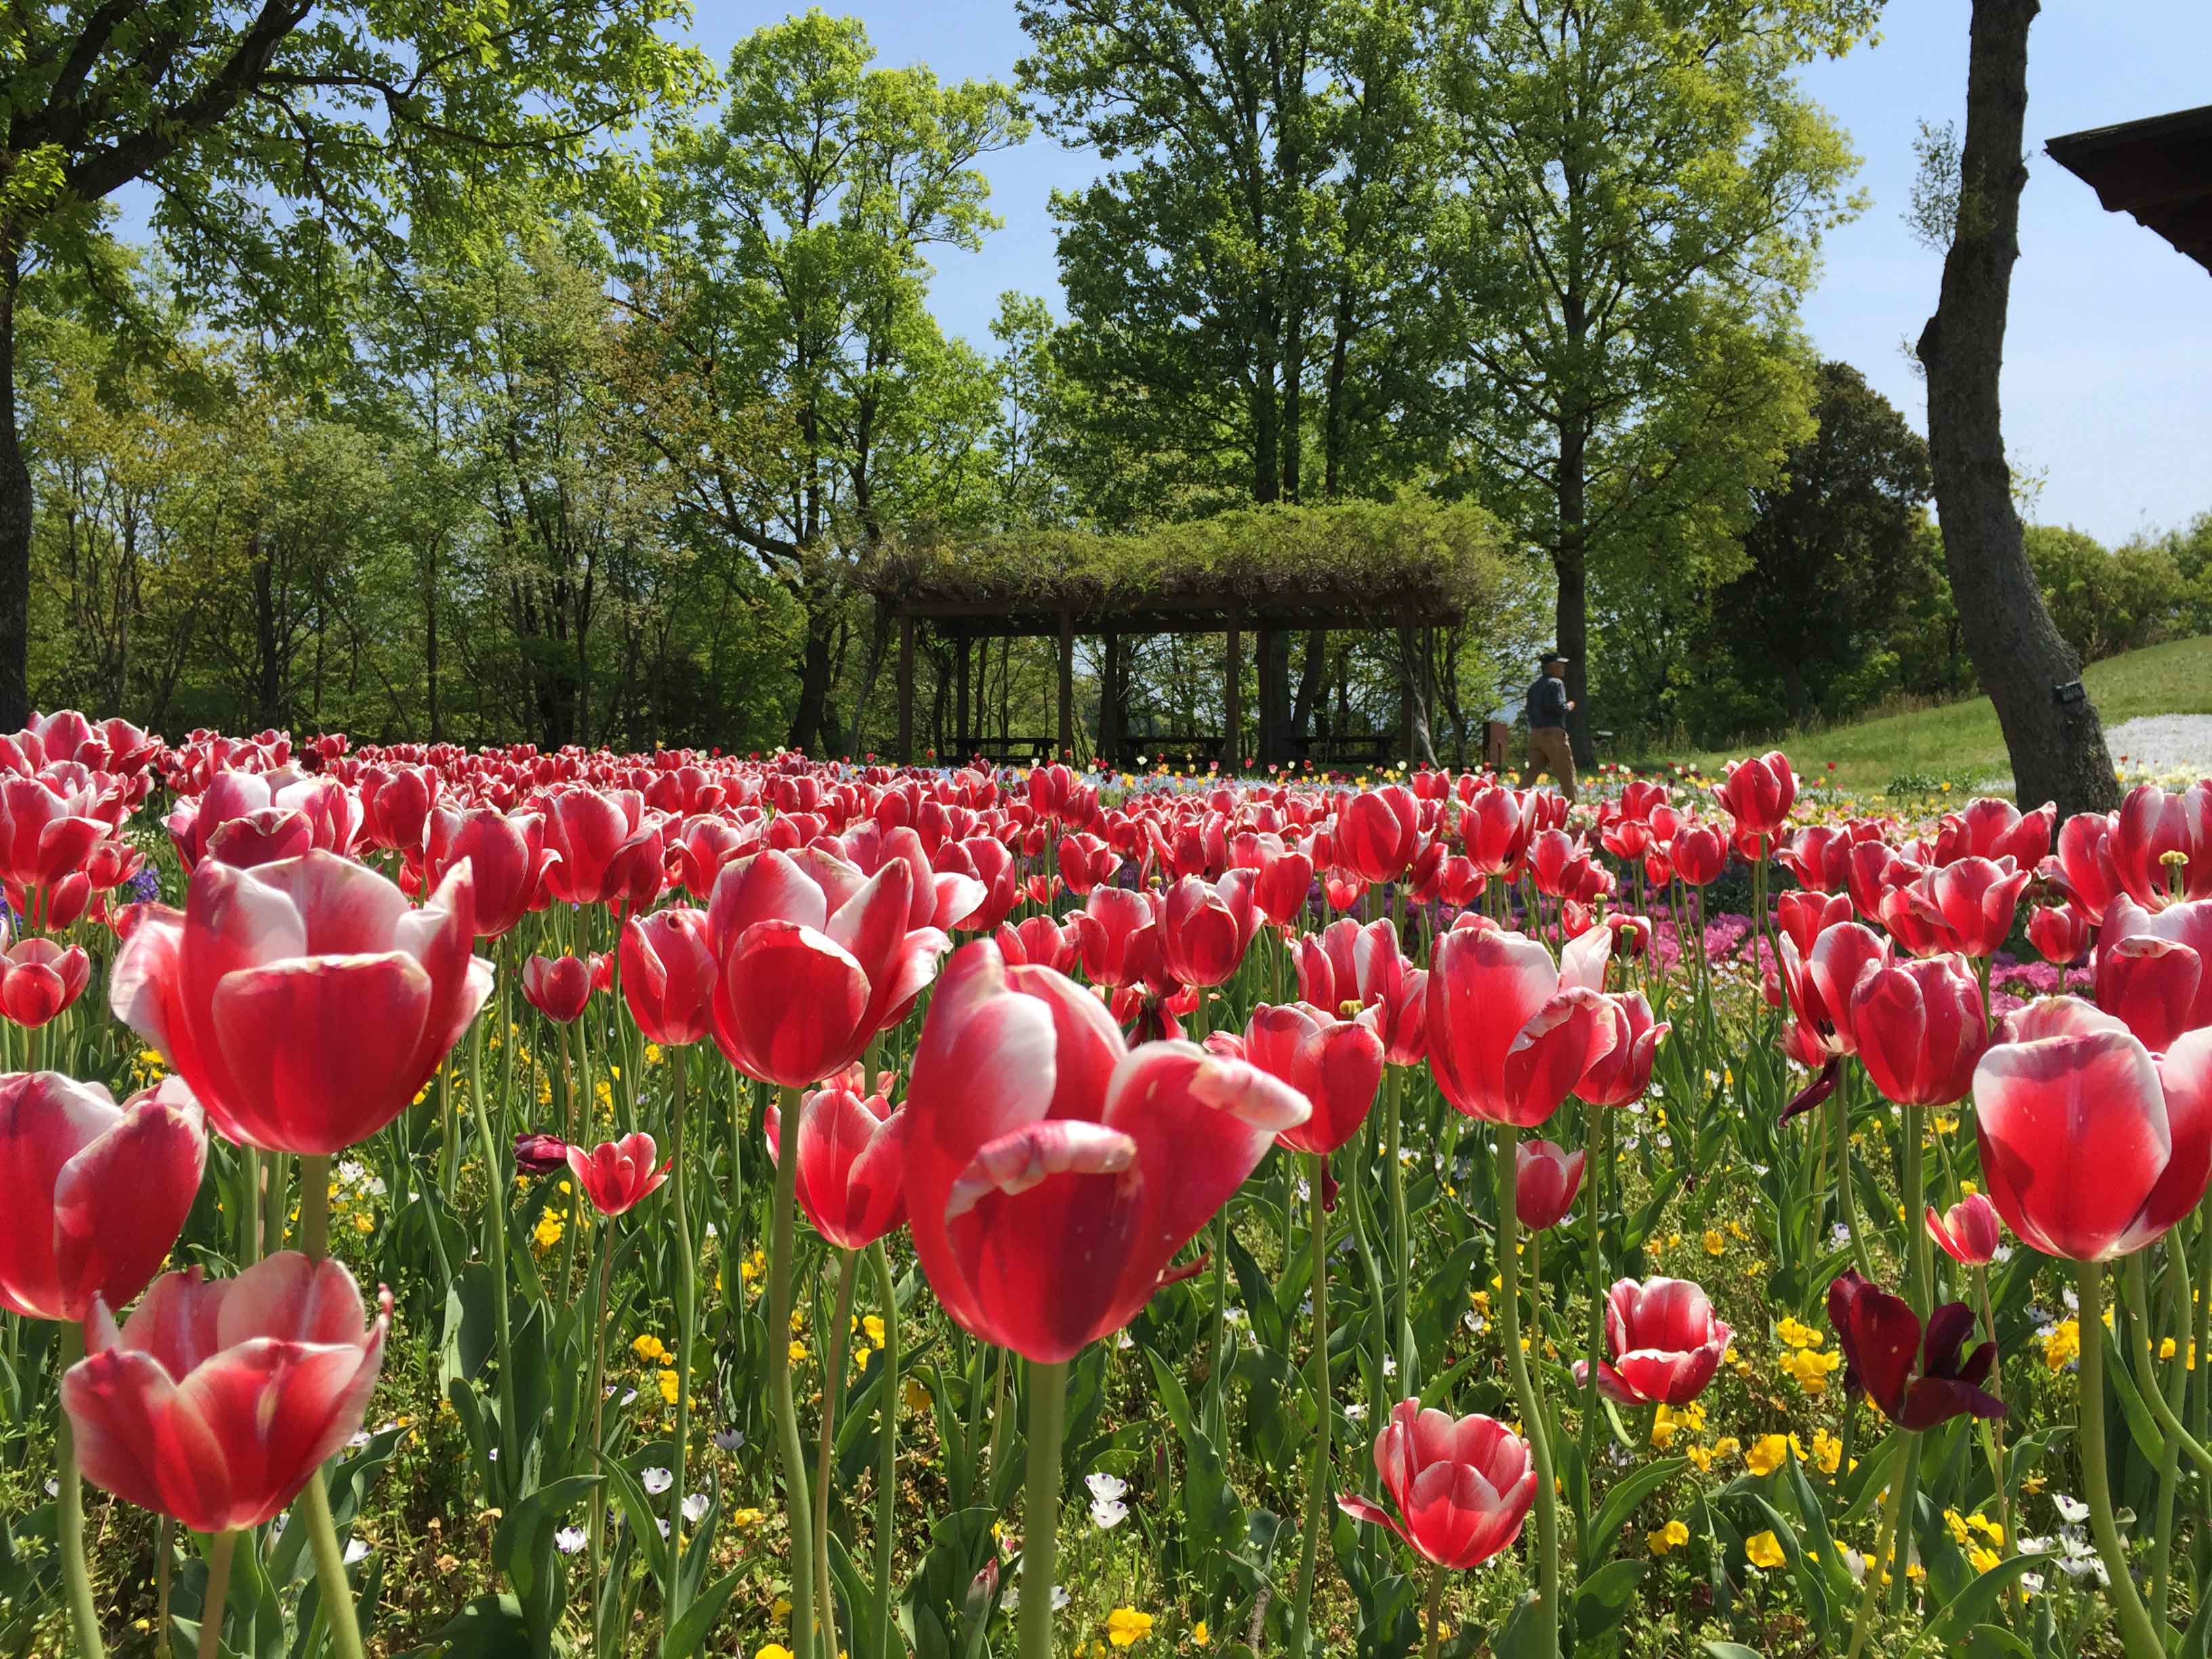 国営讃岐まんのう公園内の敷地で、一面に咲き誇る赤いチューリップの写真です。